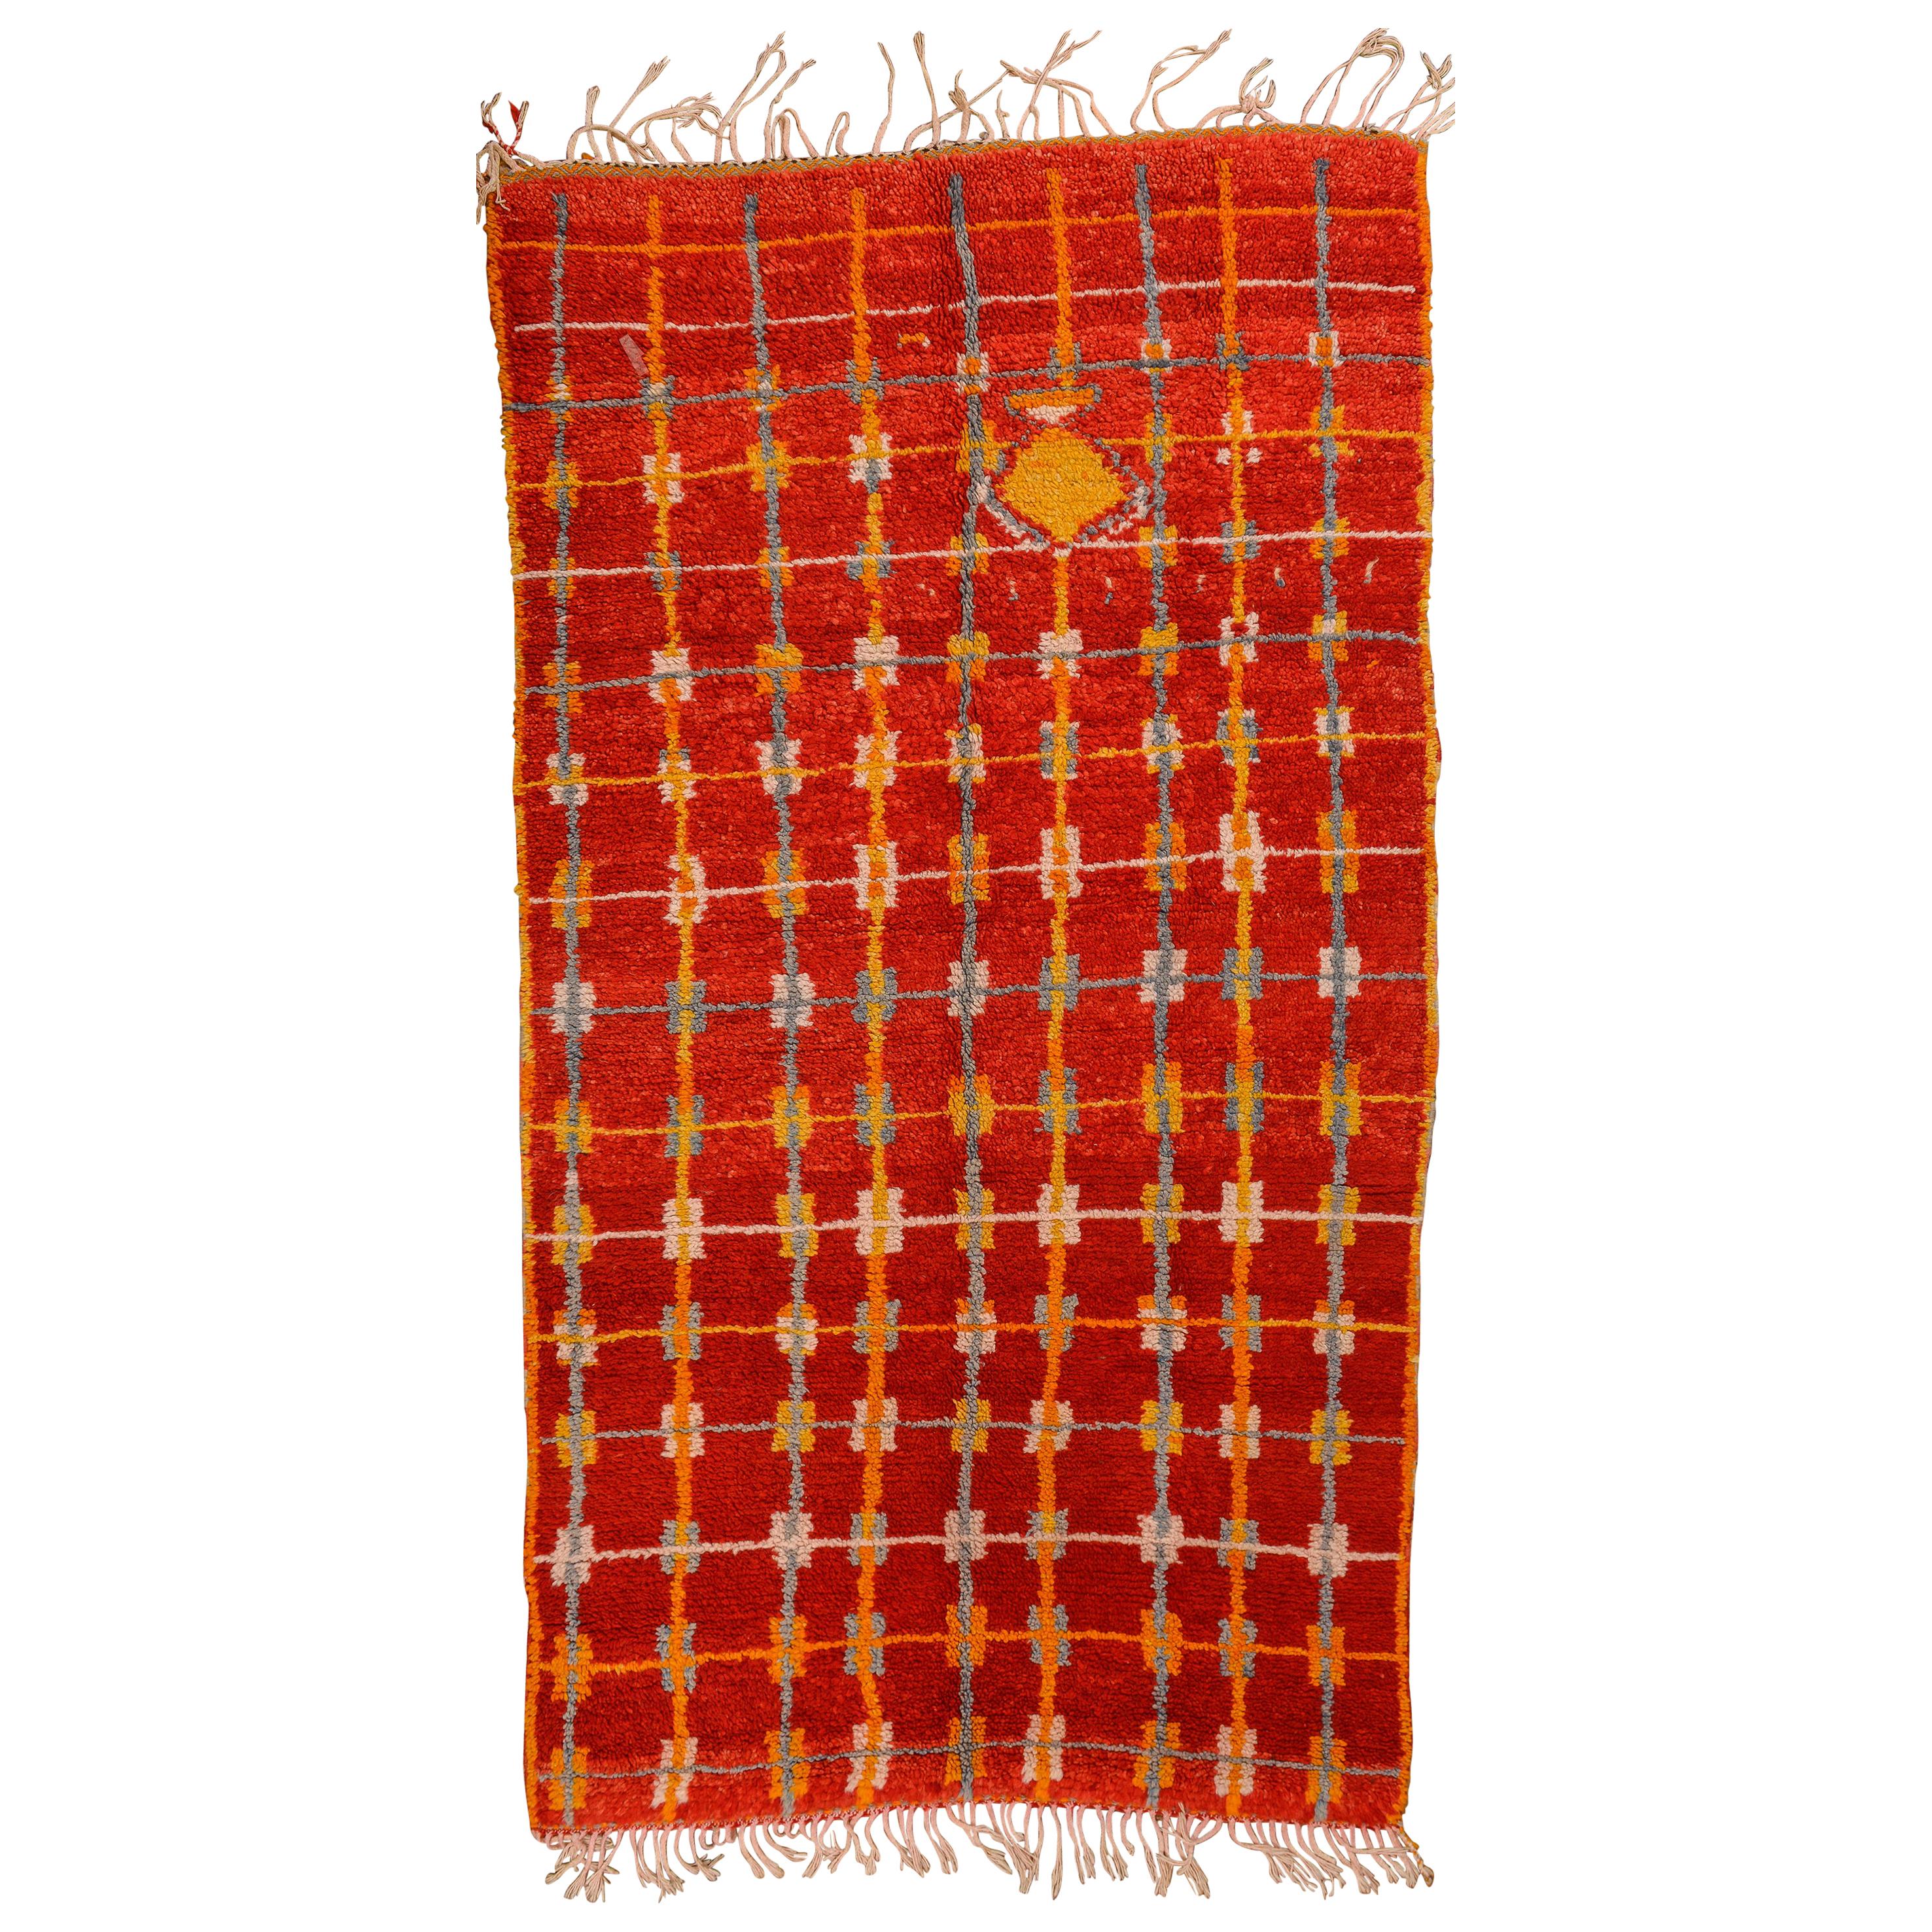 Marokkanischer Vintage-Teppich mit lebhaftem Rot